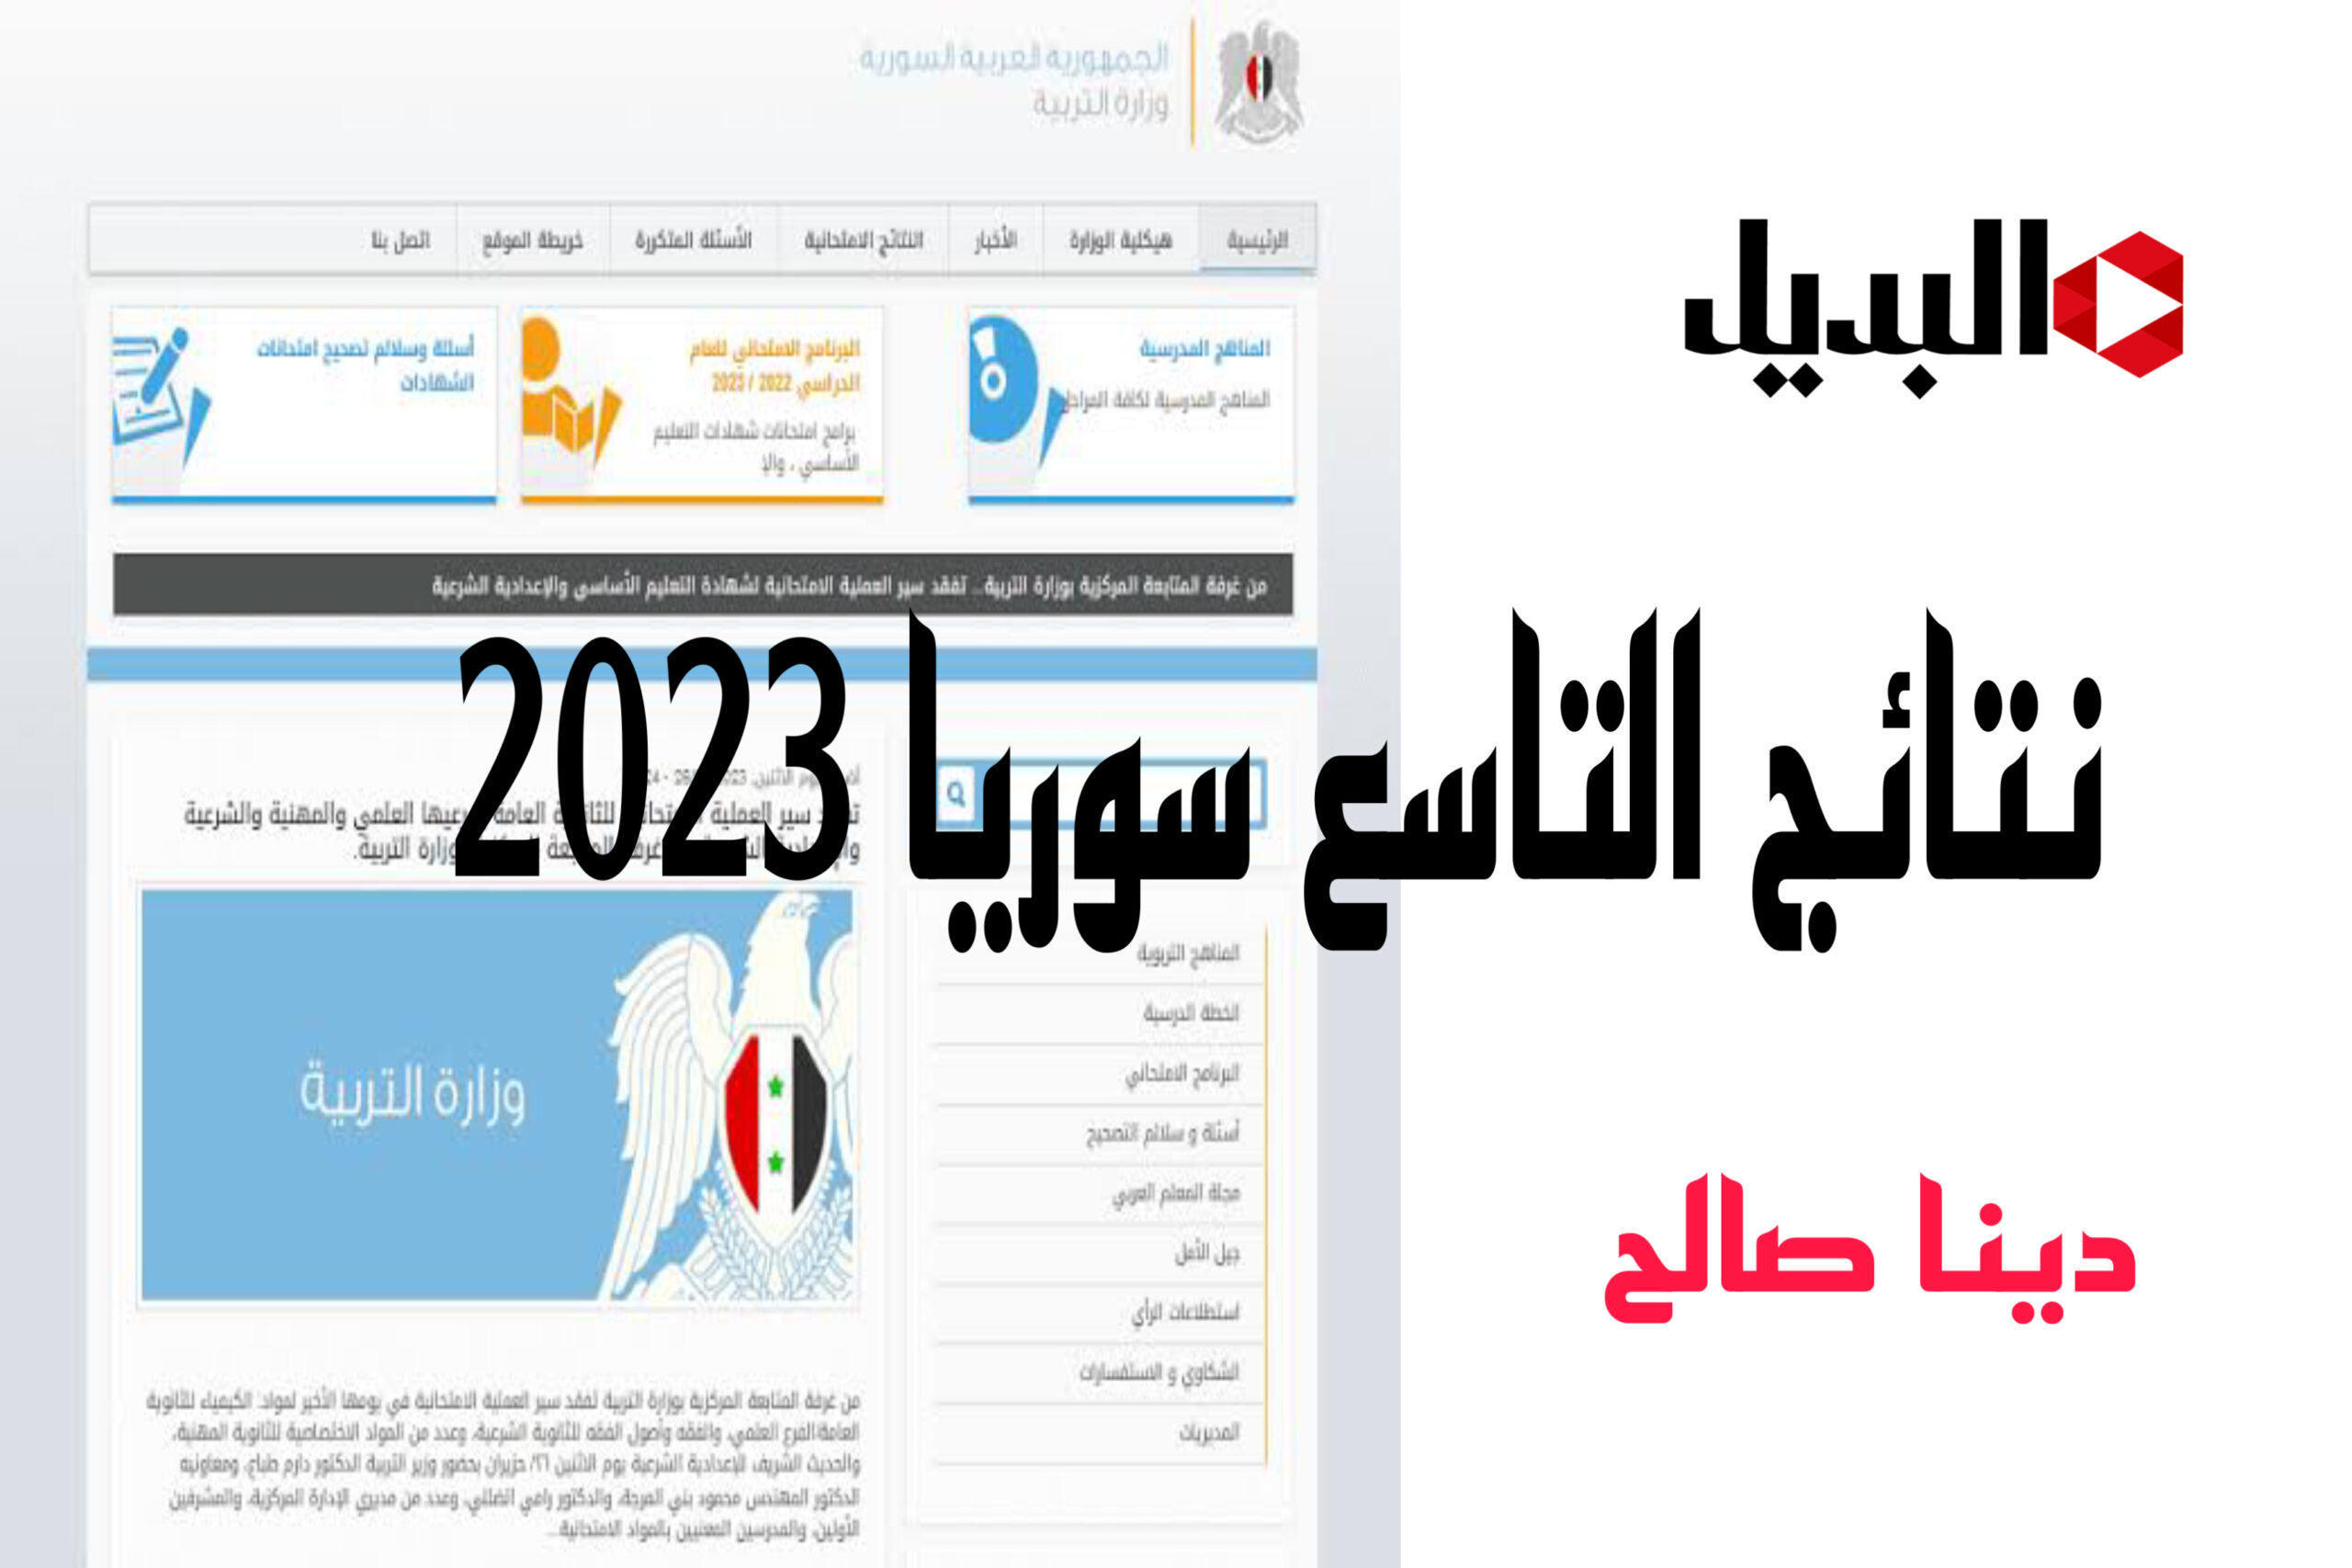 نتائج التاسع سوريا 2023